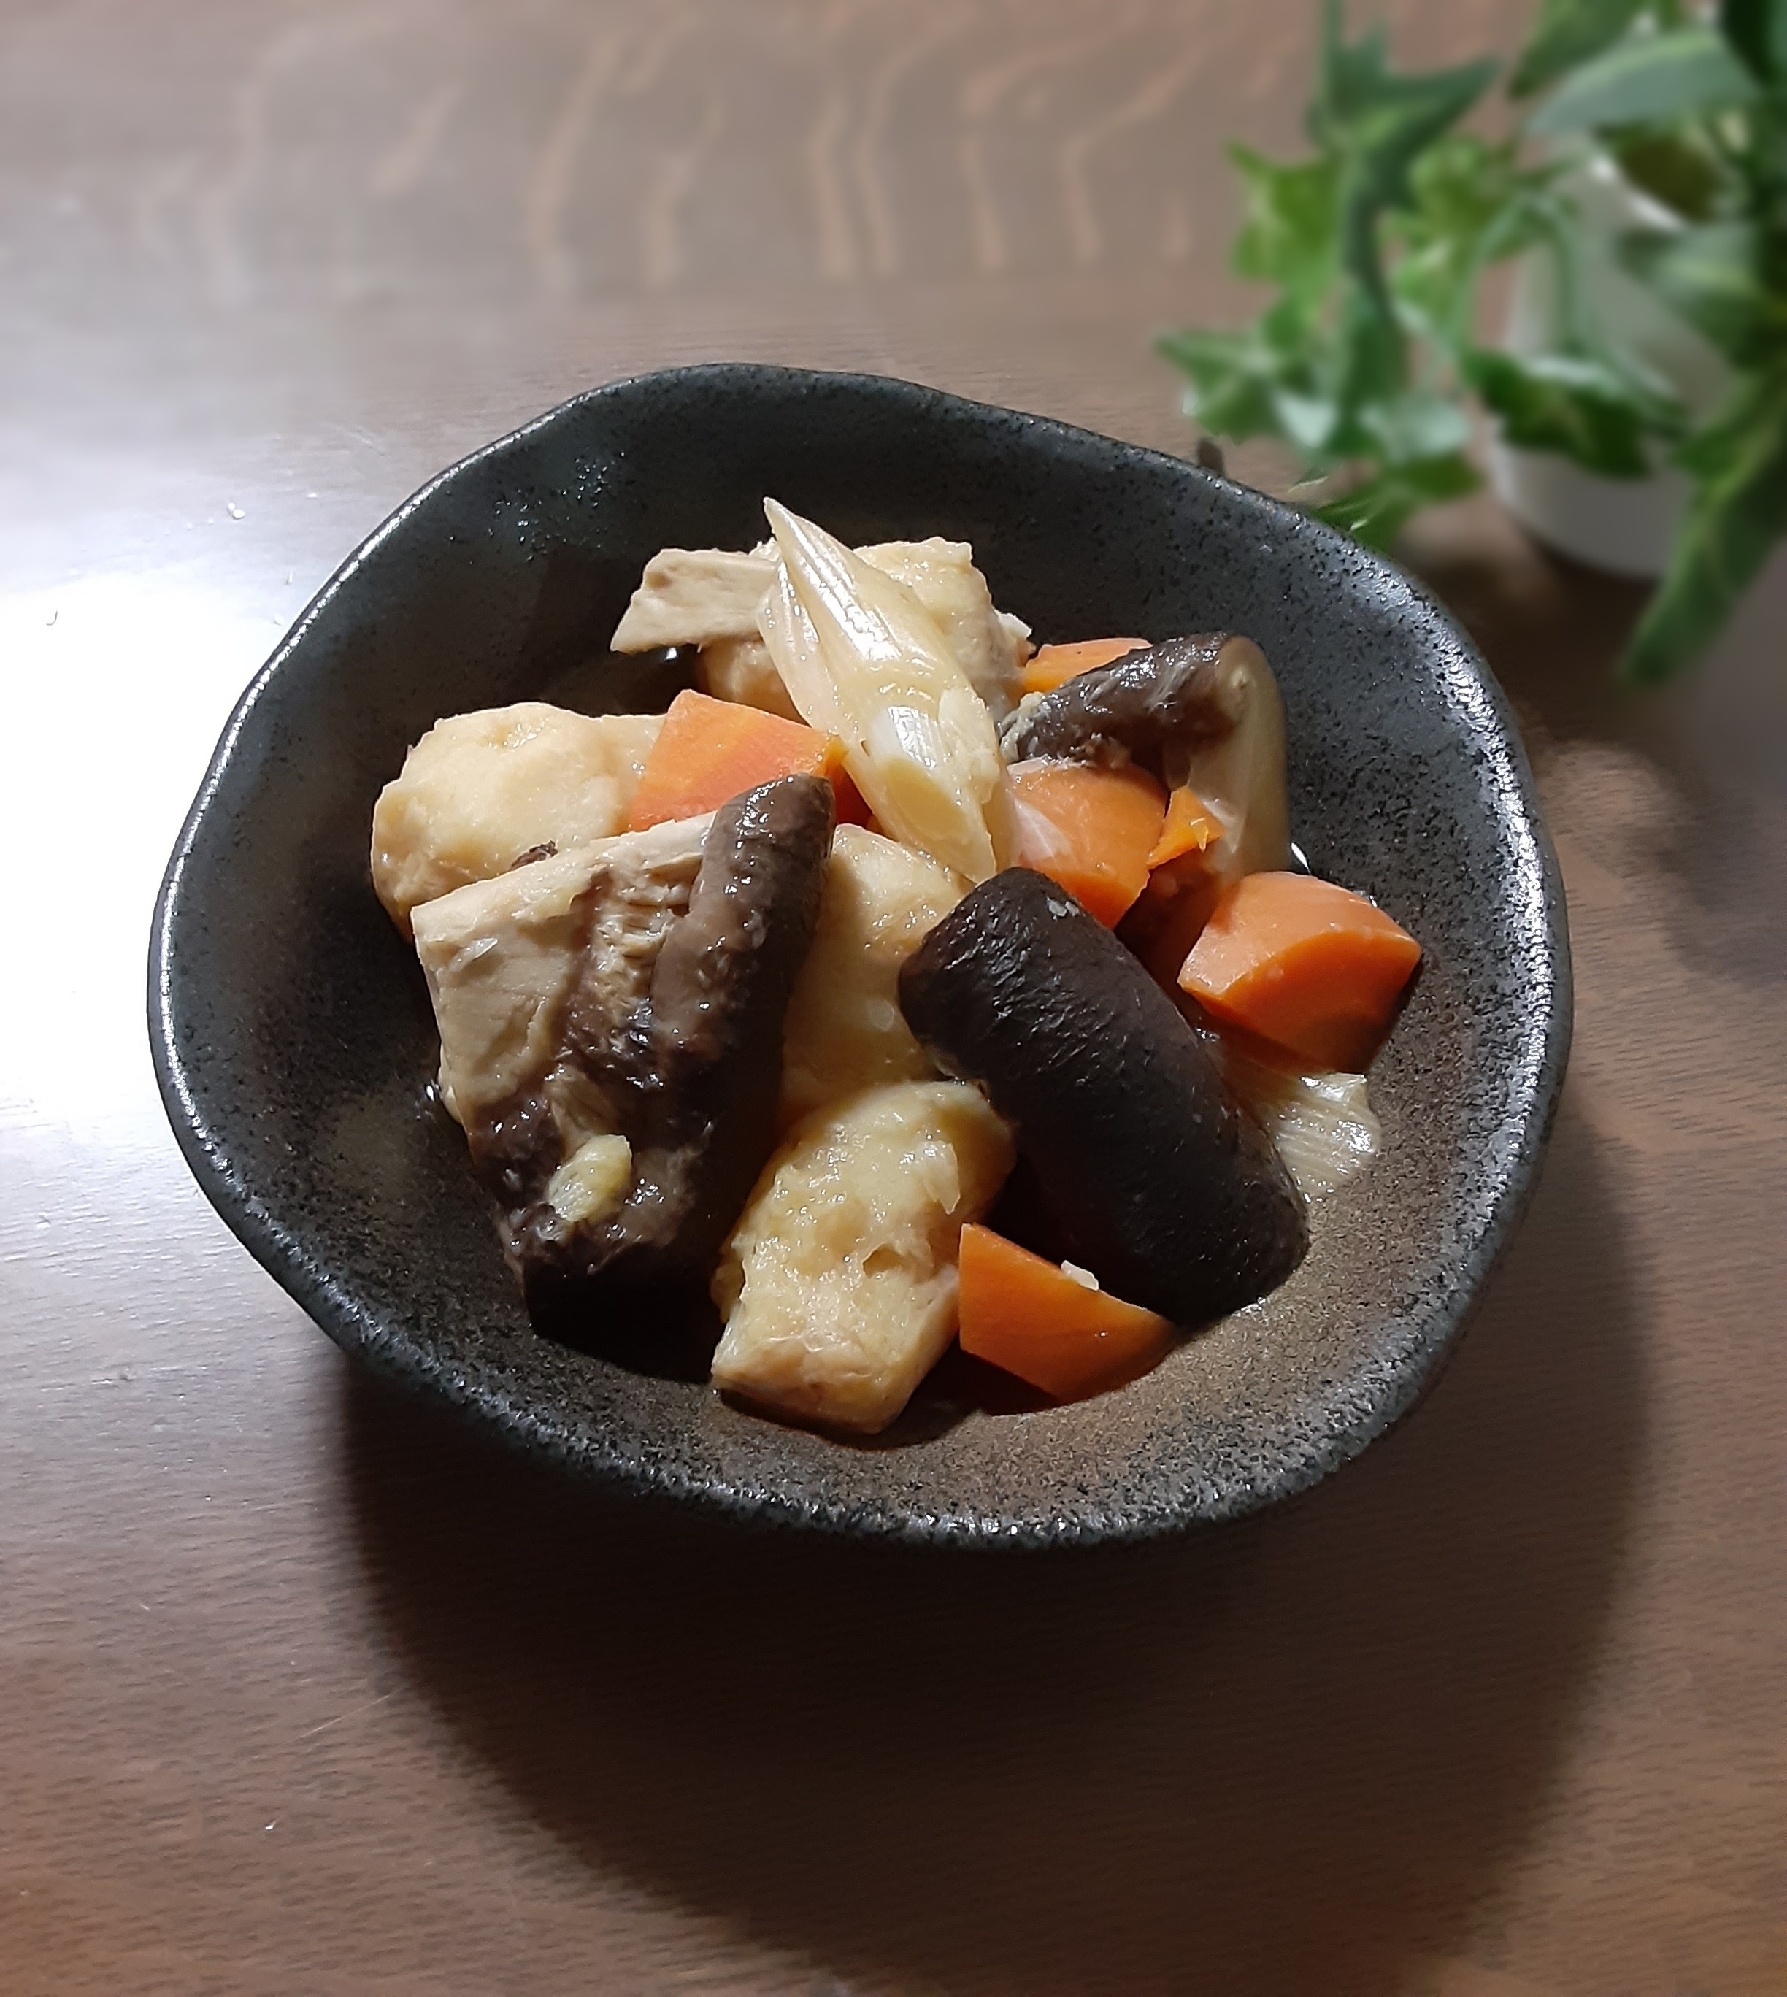 【めんつゆのみ】きのこ・野菜の簡単煮物